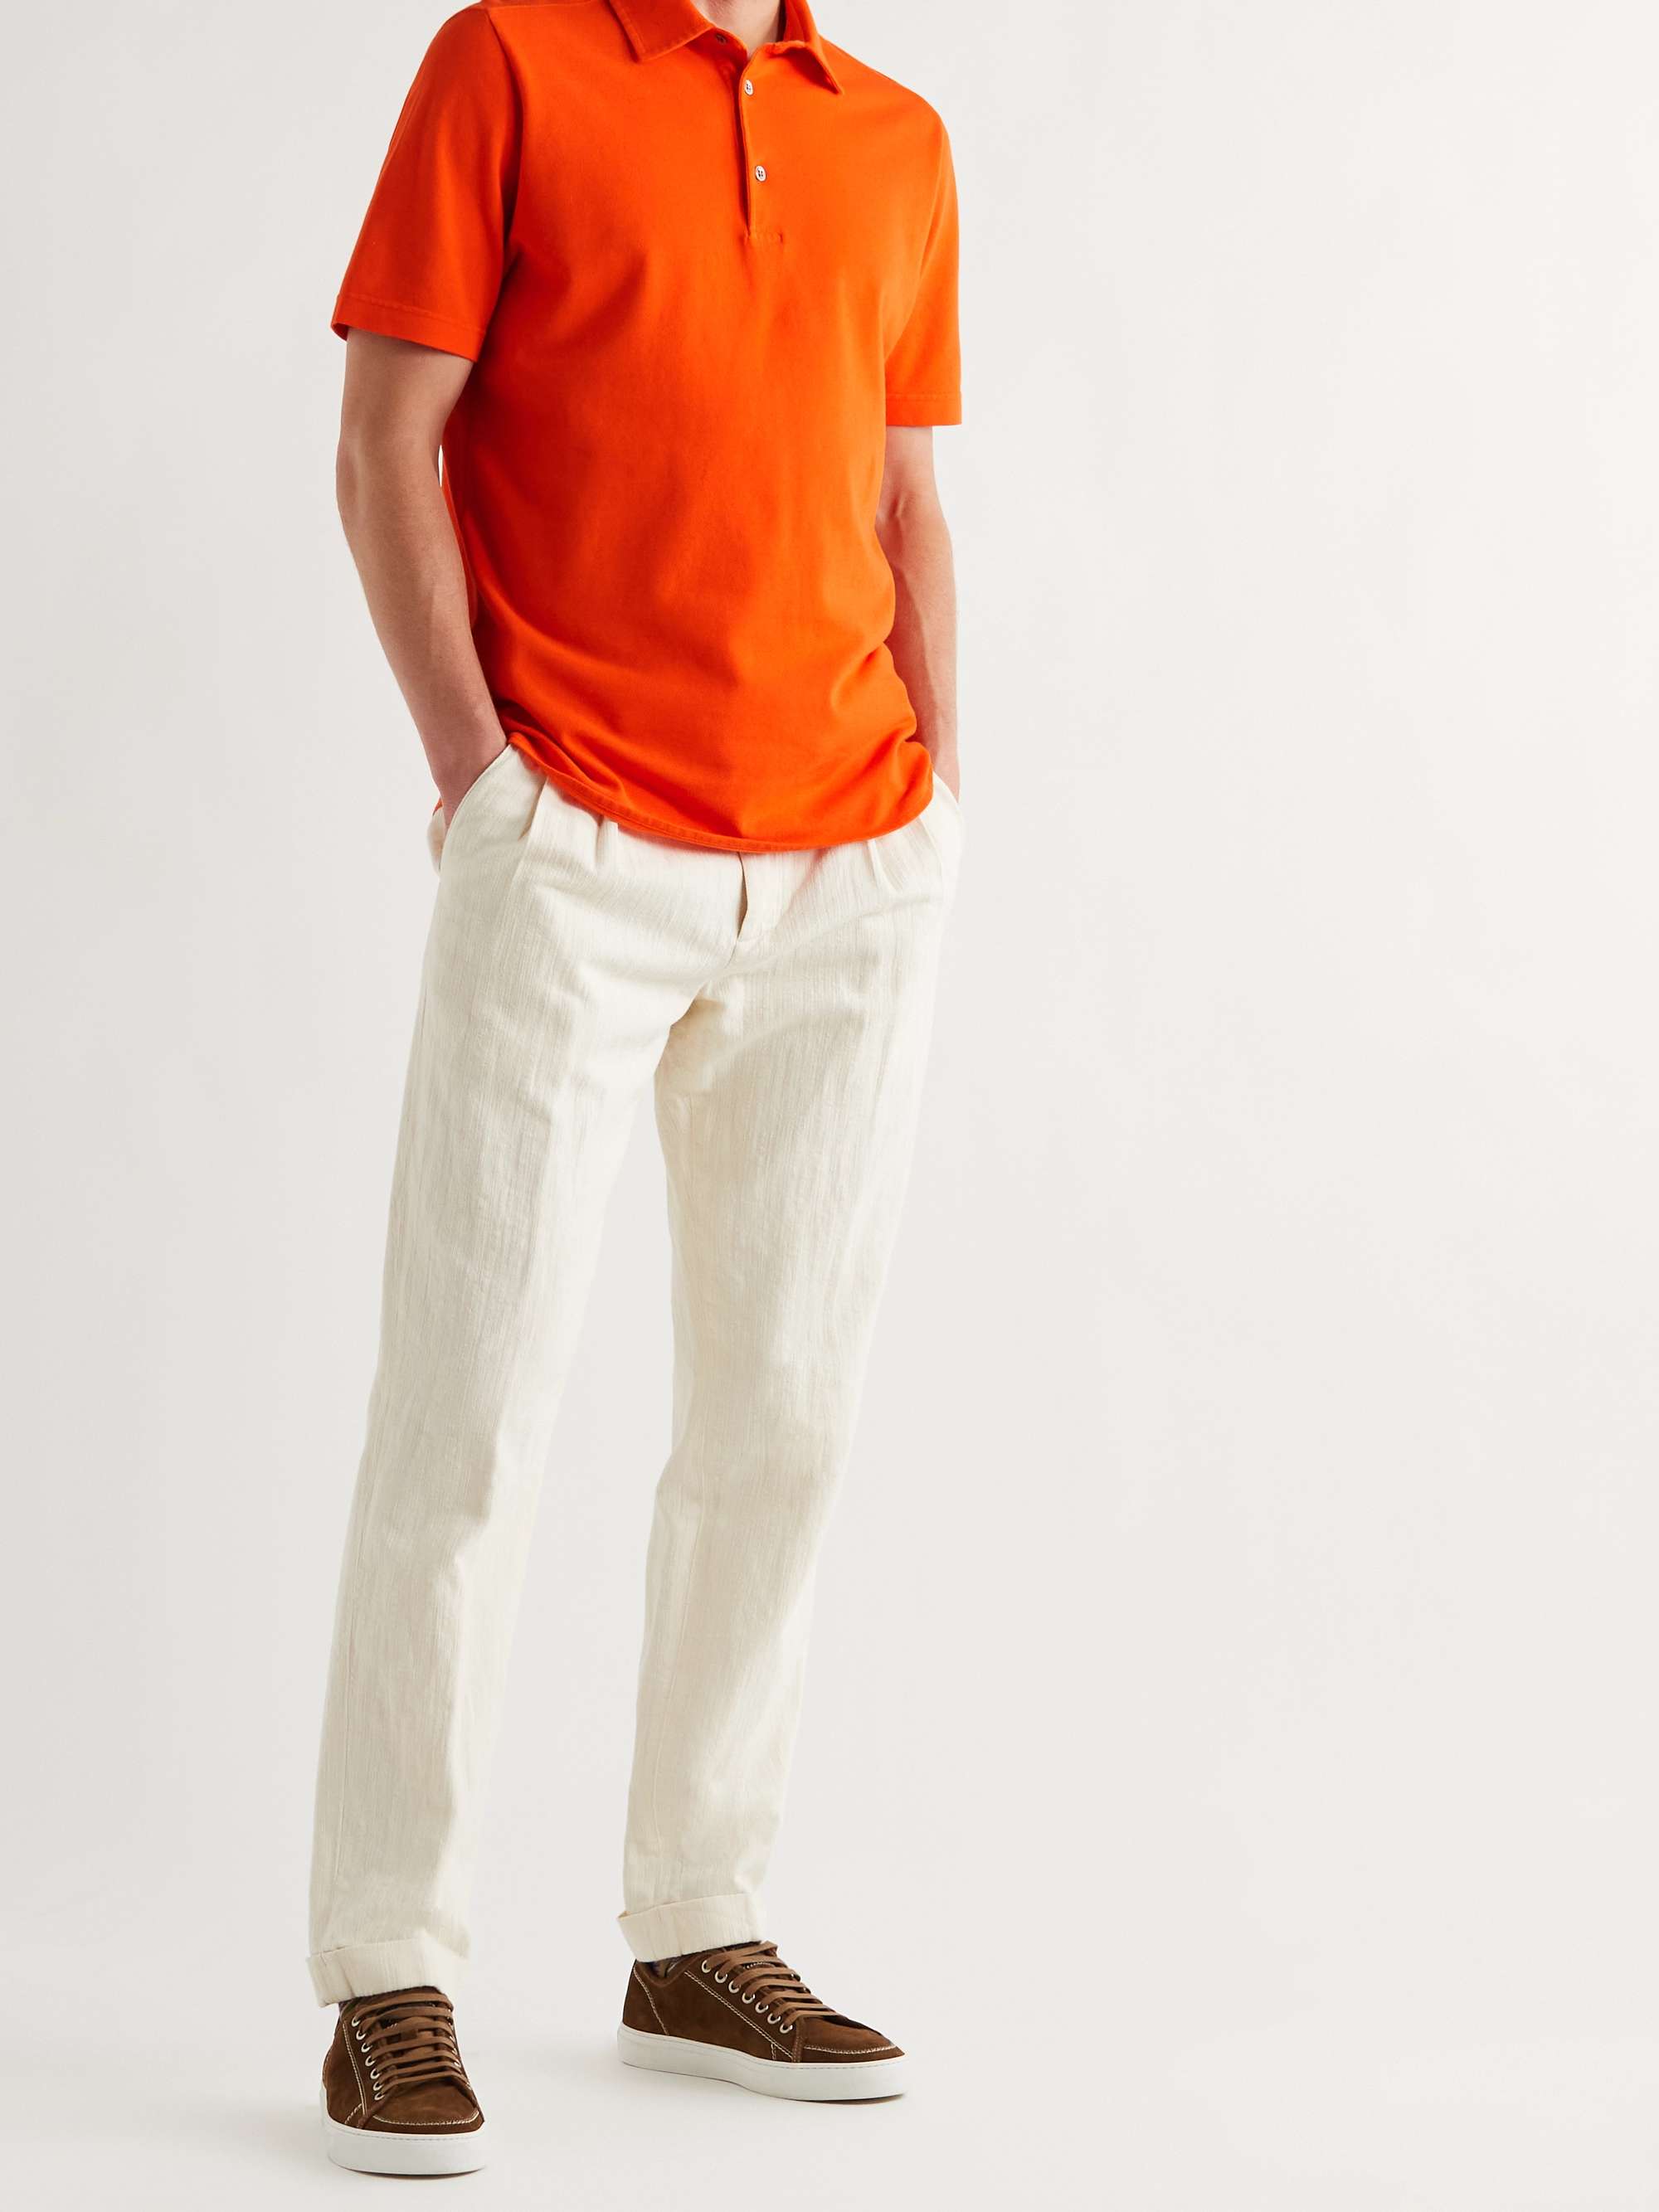 Cotton-Piqué Polo Shirt